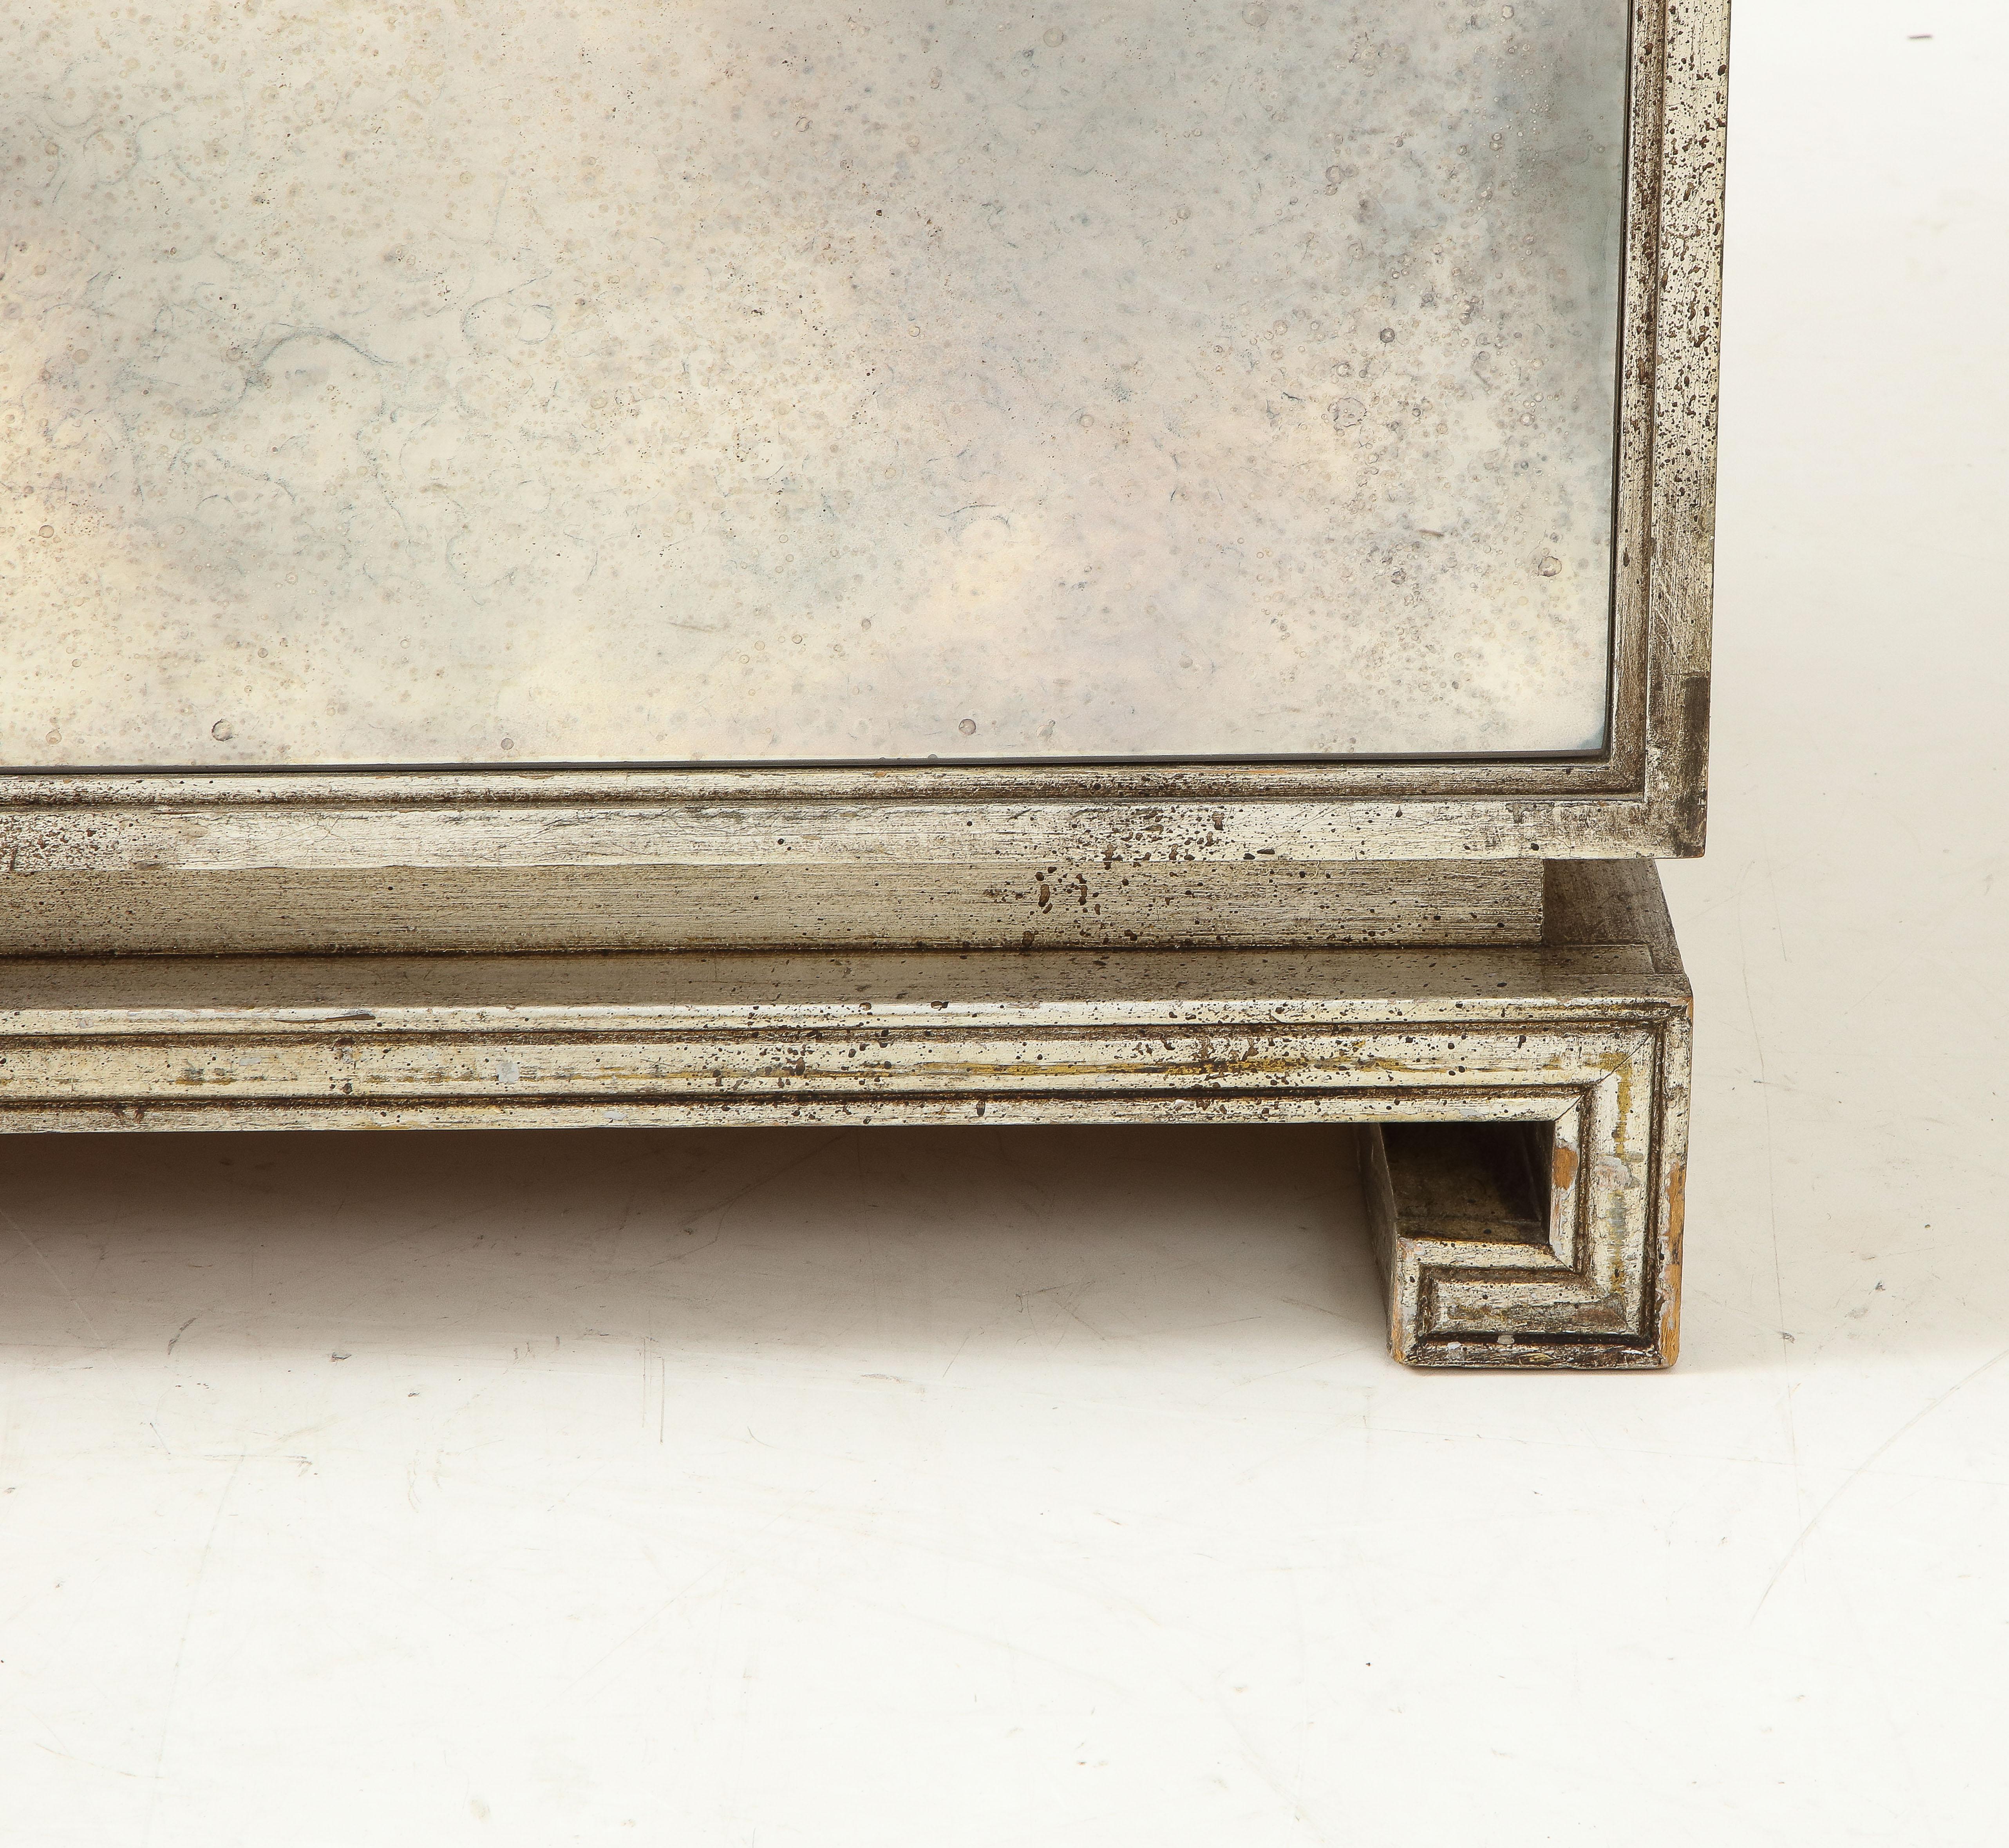 Verspiegeltes und versilbertes Sideboard von Grosfeld House, ca. 1940/50er Jahre, amerikanisch, zweitüriger Schrank mit antikem Spiegelglas und versilberten Holzverkleidungen, mit Lucite-Zylindergriffen, auf Sockel mit griechischem Schlüssel, der